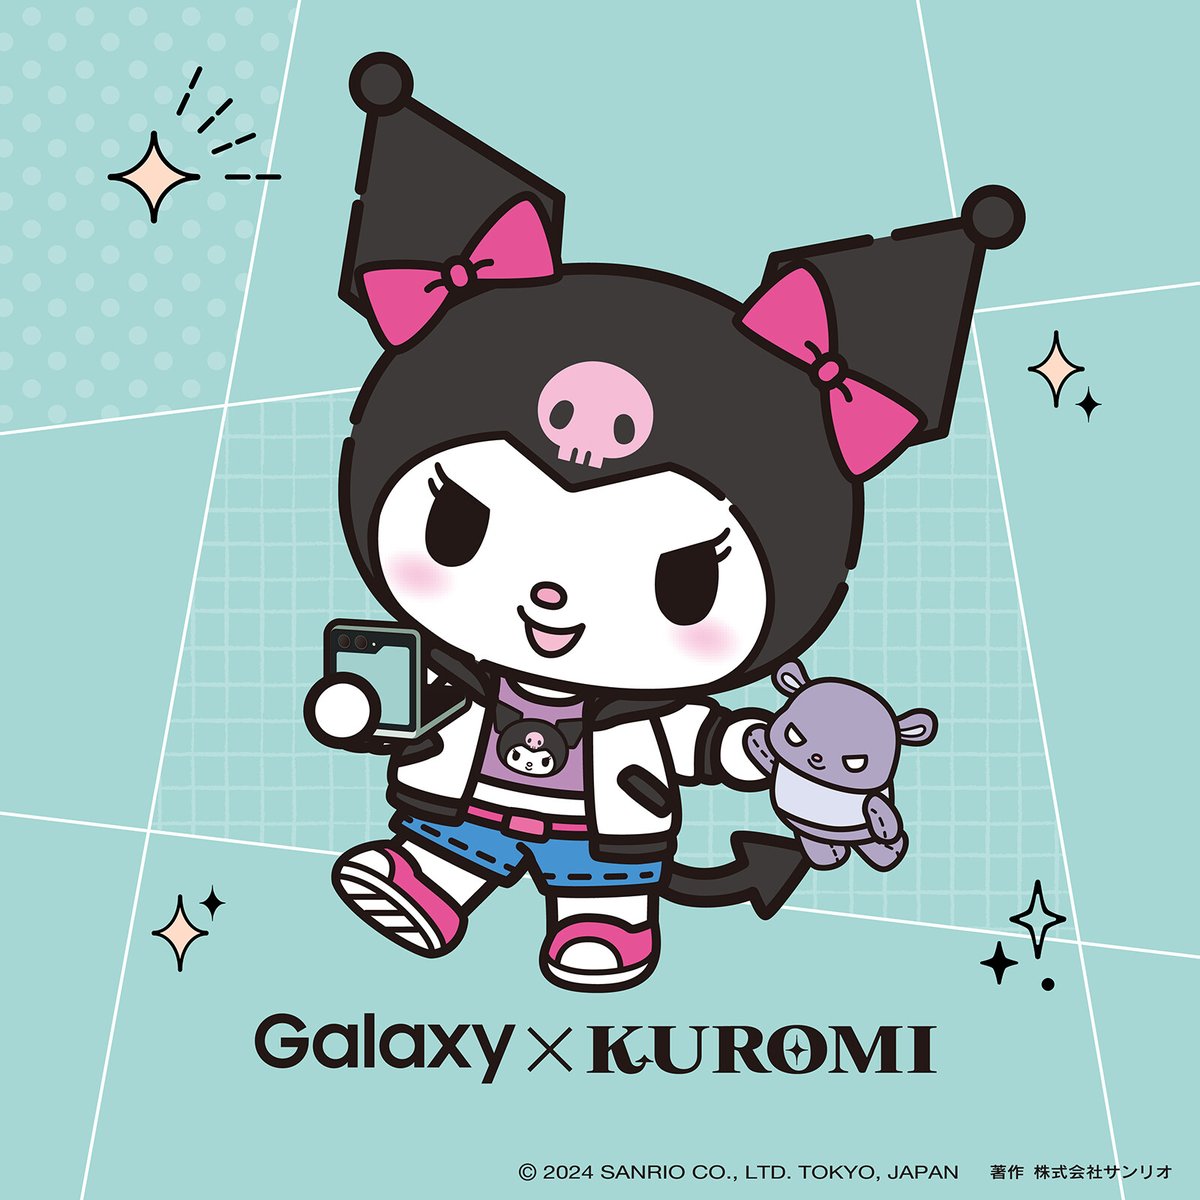 アンタたちもう #Galaxy使ってみた イベント行った？
アタイおすすめの撮り方で参加しちゃってくれよな！

lnky.jp/r3qjtc3

#サンリオ #世界クロミ化計画